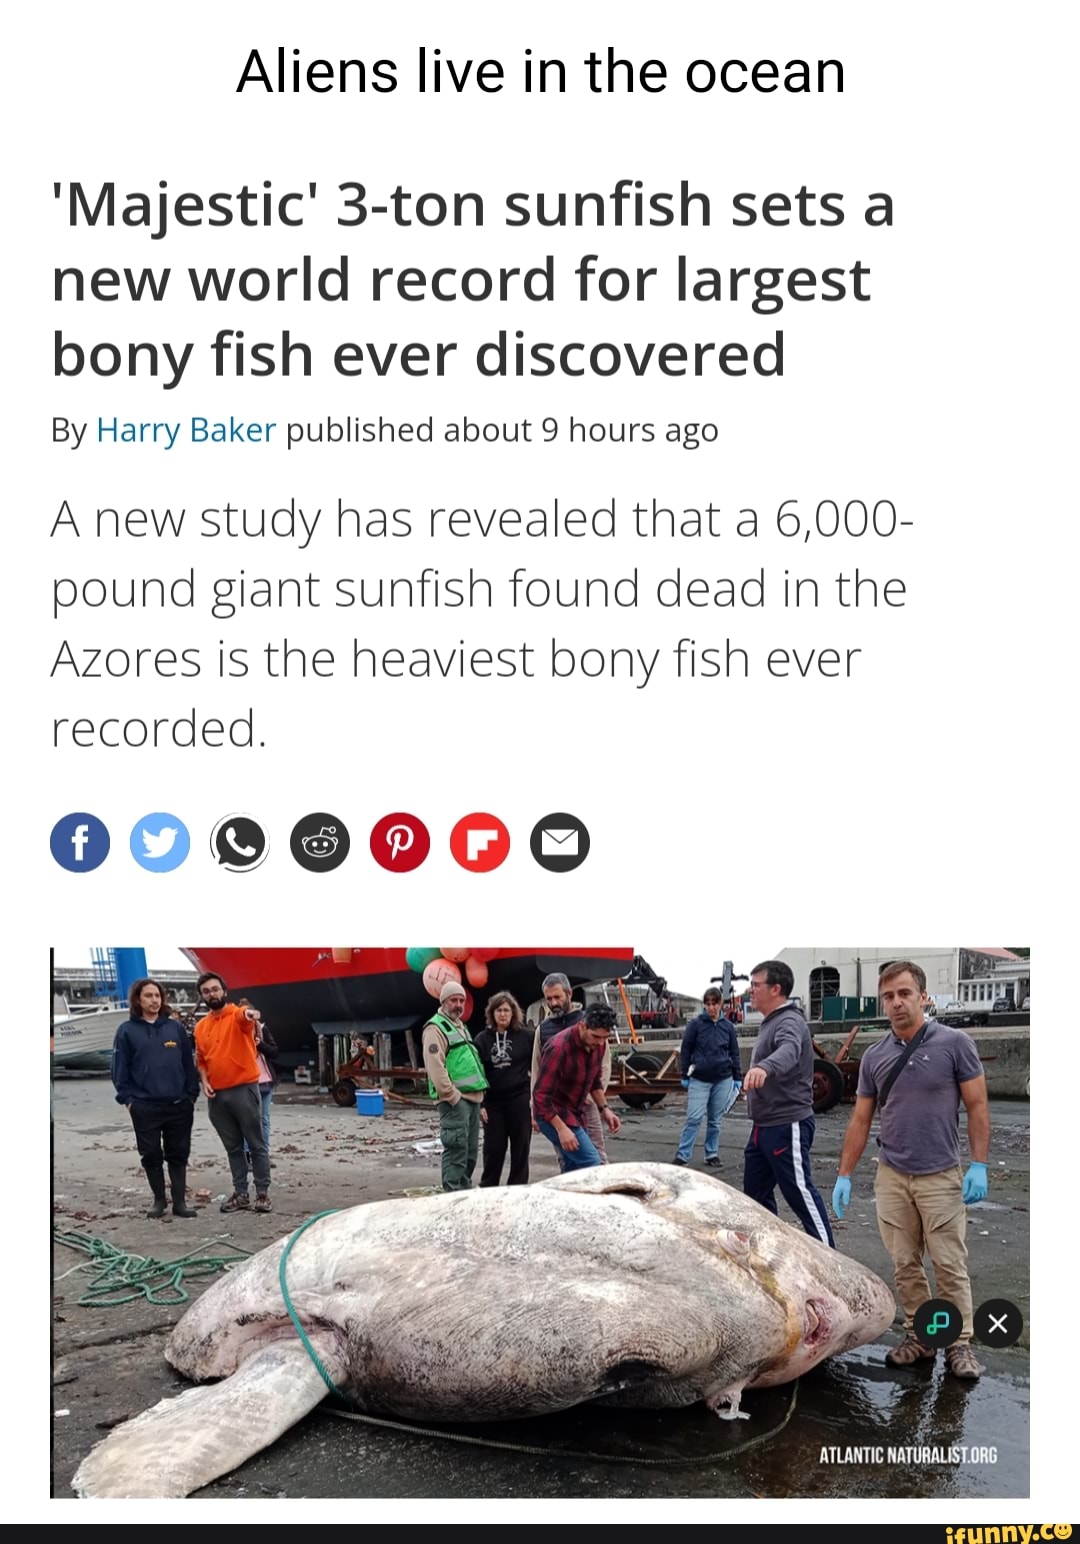 Giant 6,000-pound sunfish sets world record as largest bony fish